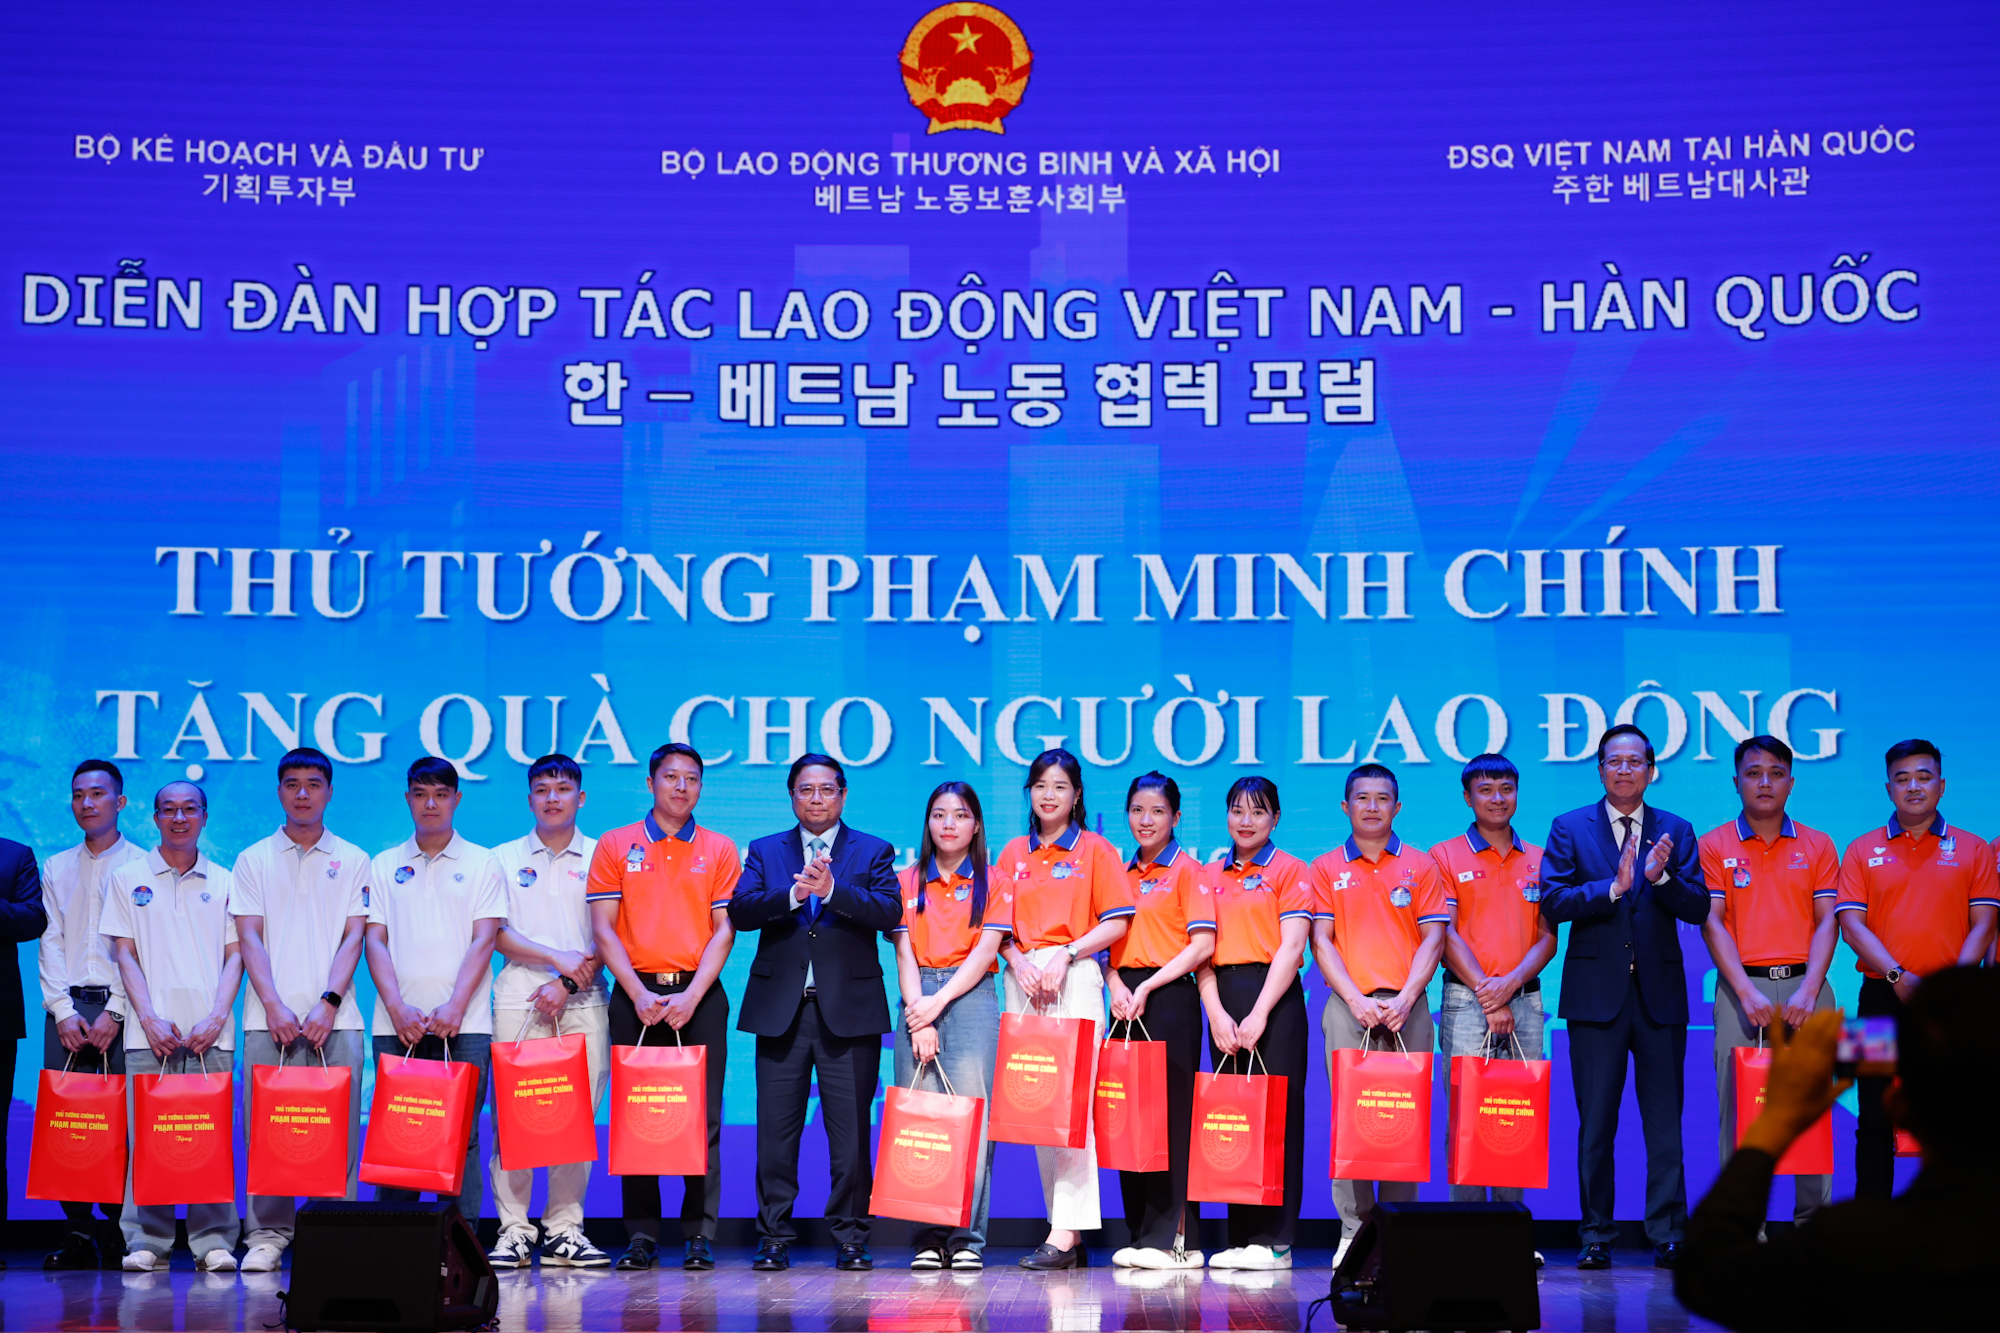 Tạo thuận lợi nhất cho người lao động, nâng tầm hợp tác lao động Việt Nam-Hàn Quốc - ảnh 3